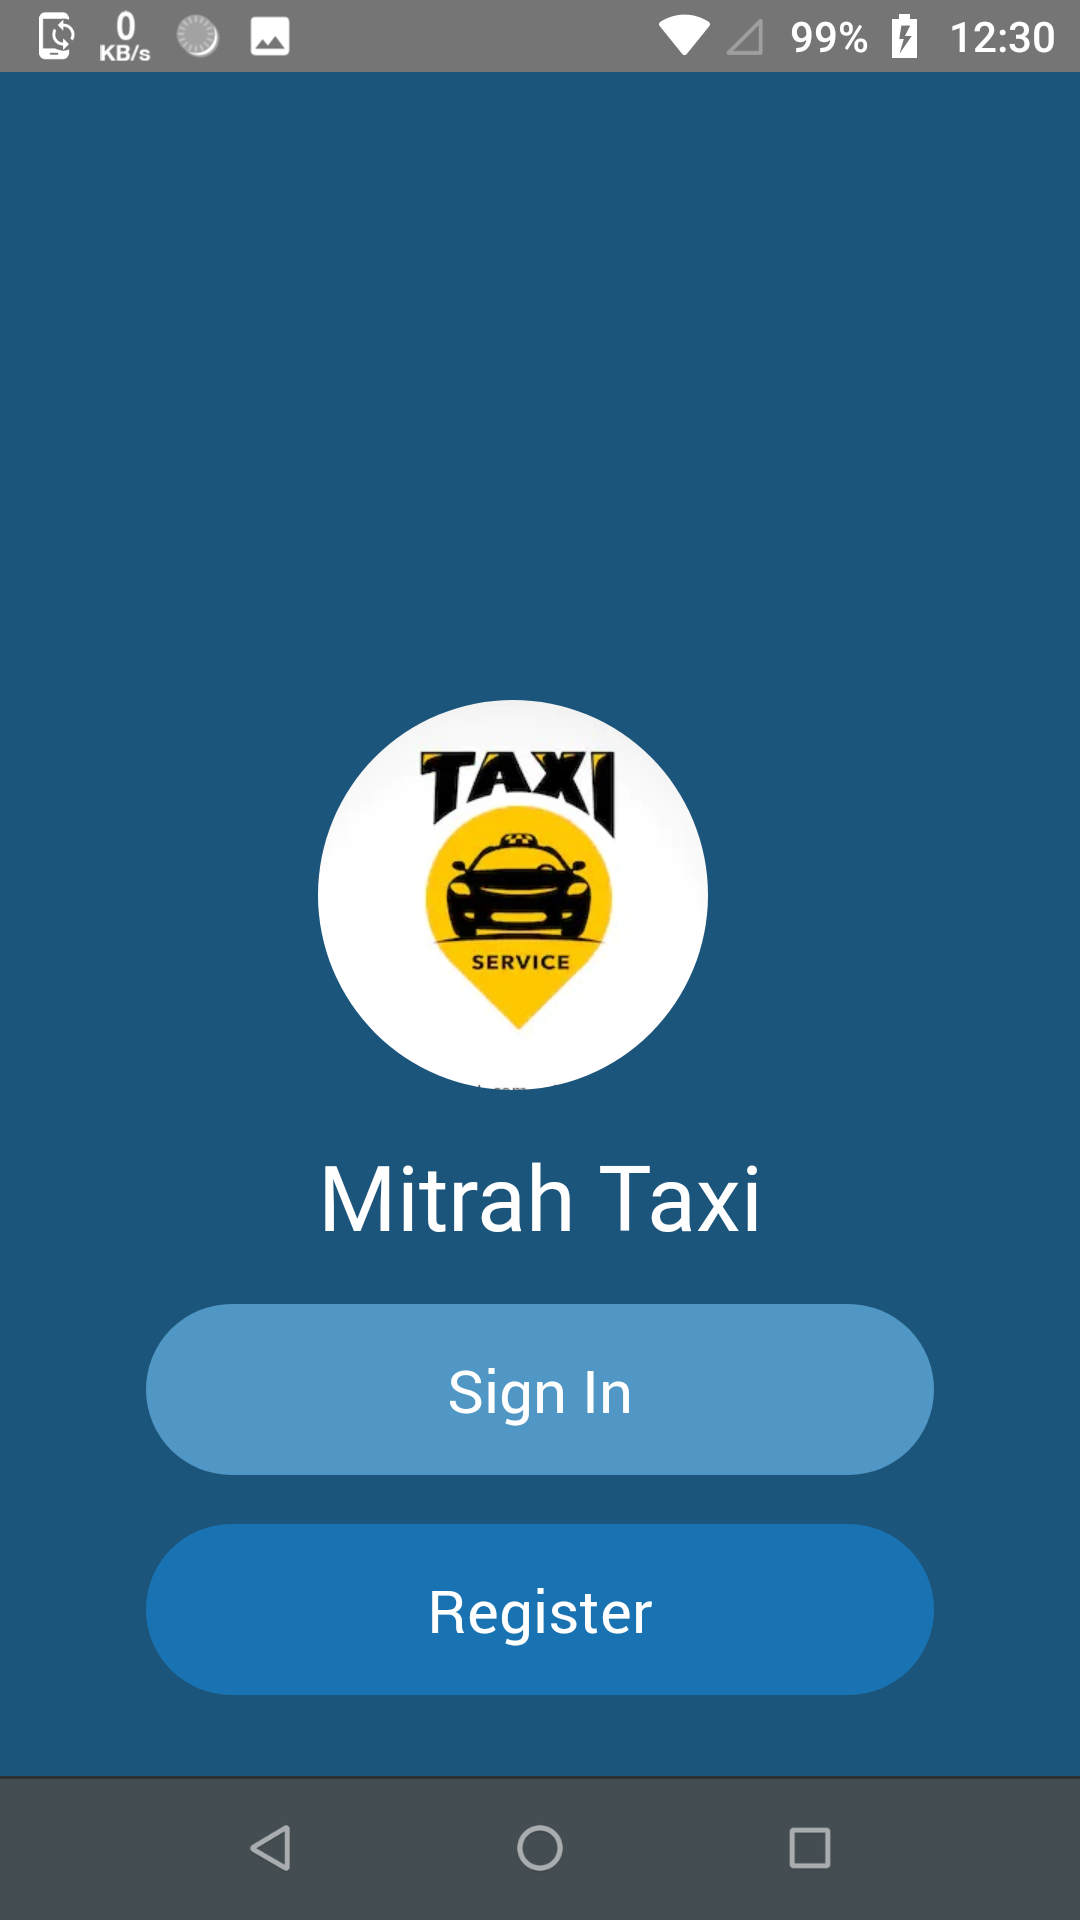 Mitrah Taxi app rider view